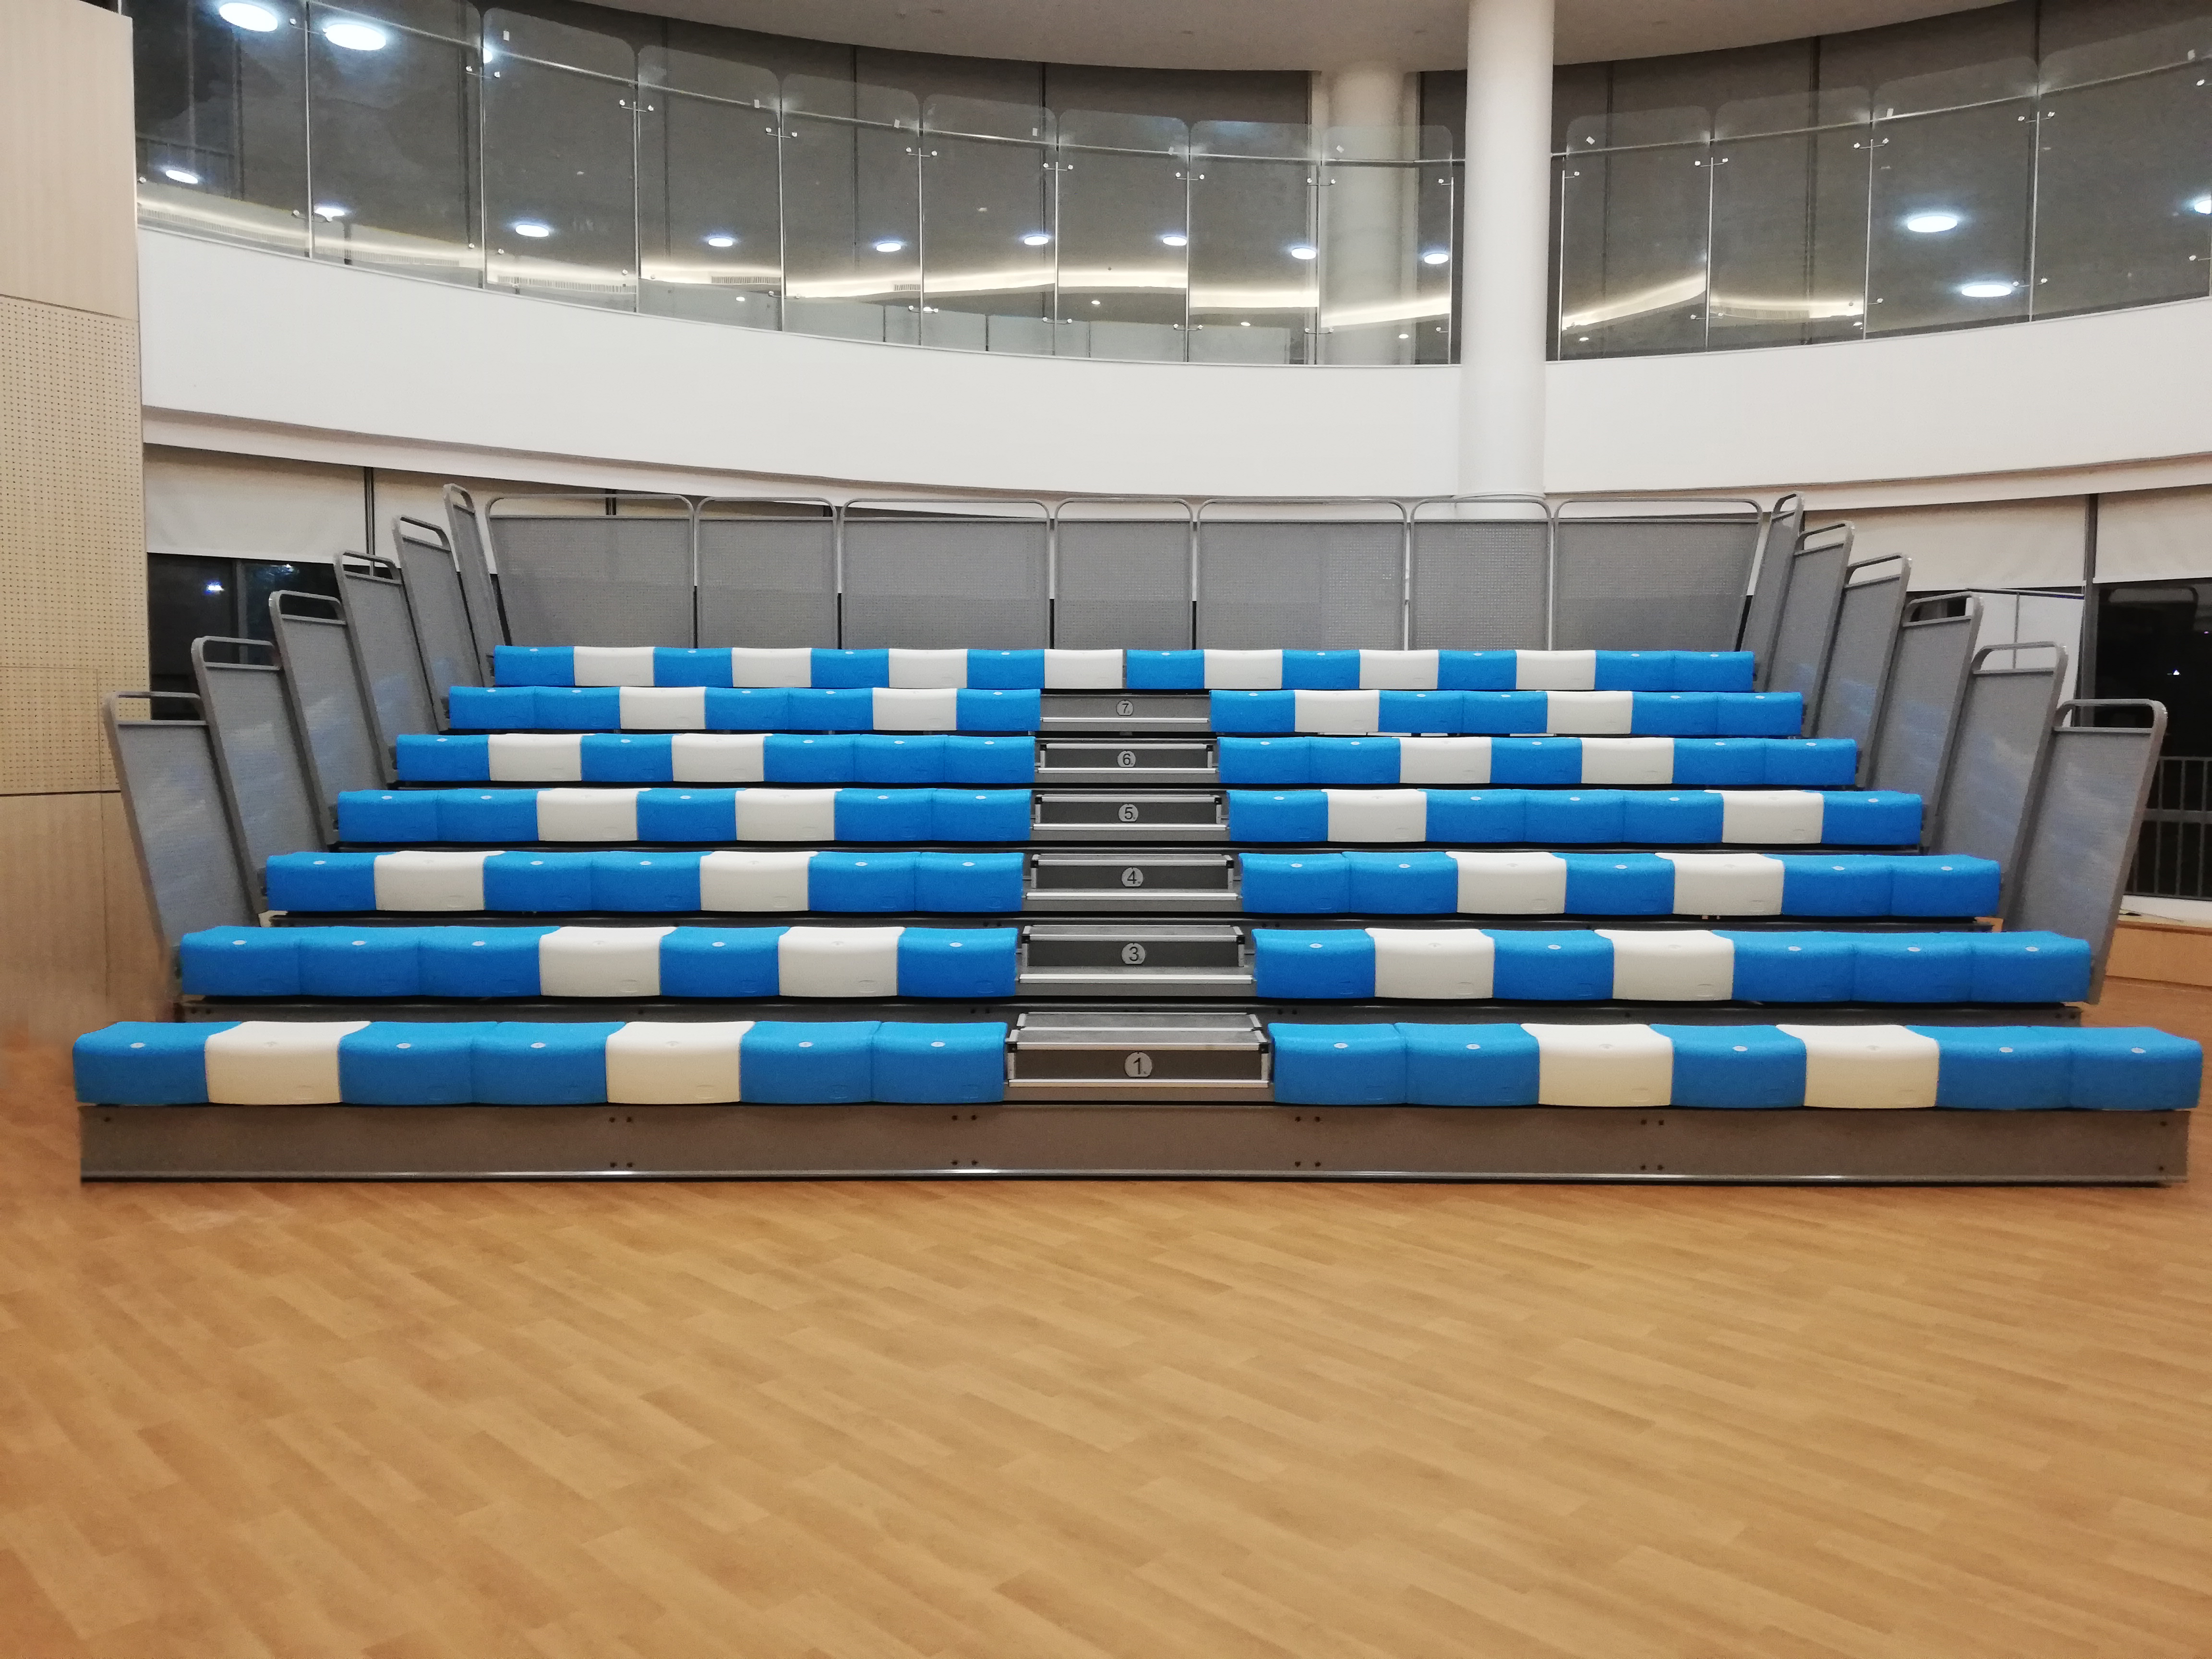 YY-LN-P ကျောင်းအတွက် တယ်လီစကုပ်အရောင်ချွတ်နိုင်သော ထိုင်ခုံစနစ်၊ အထူးအသားပေးပုံ